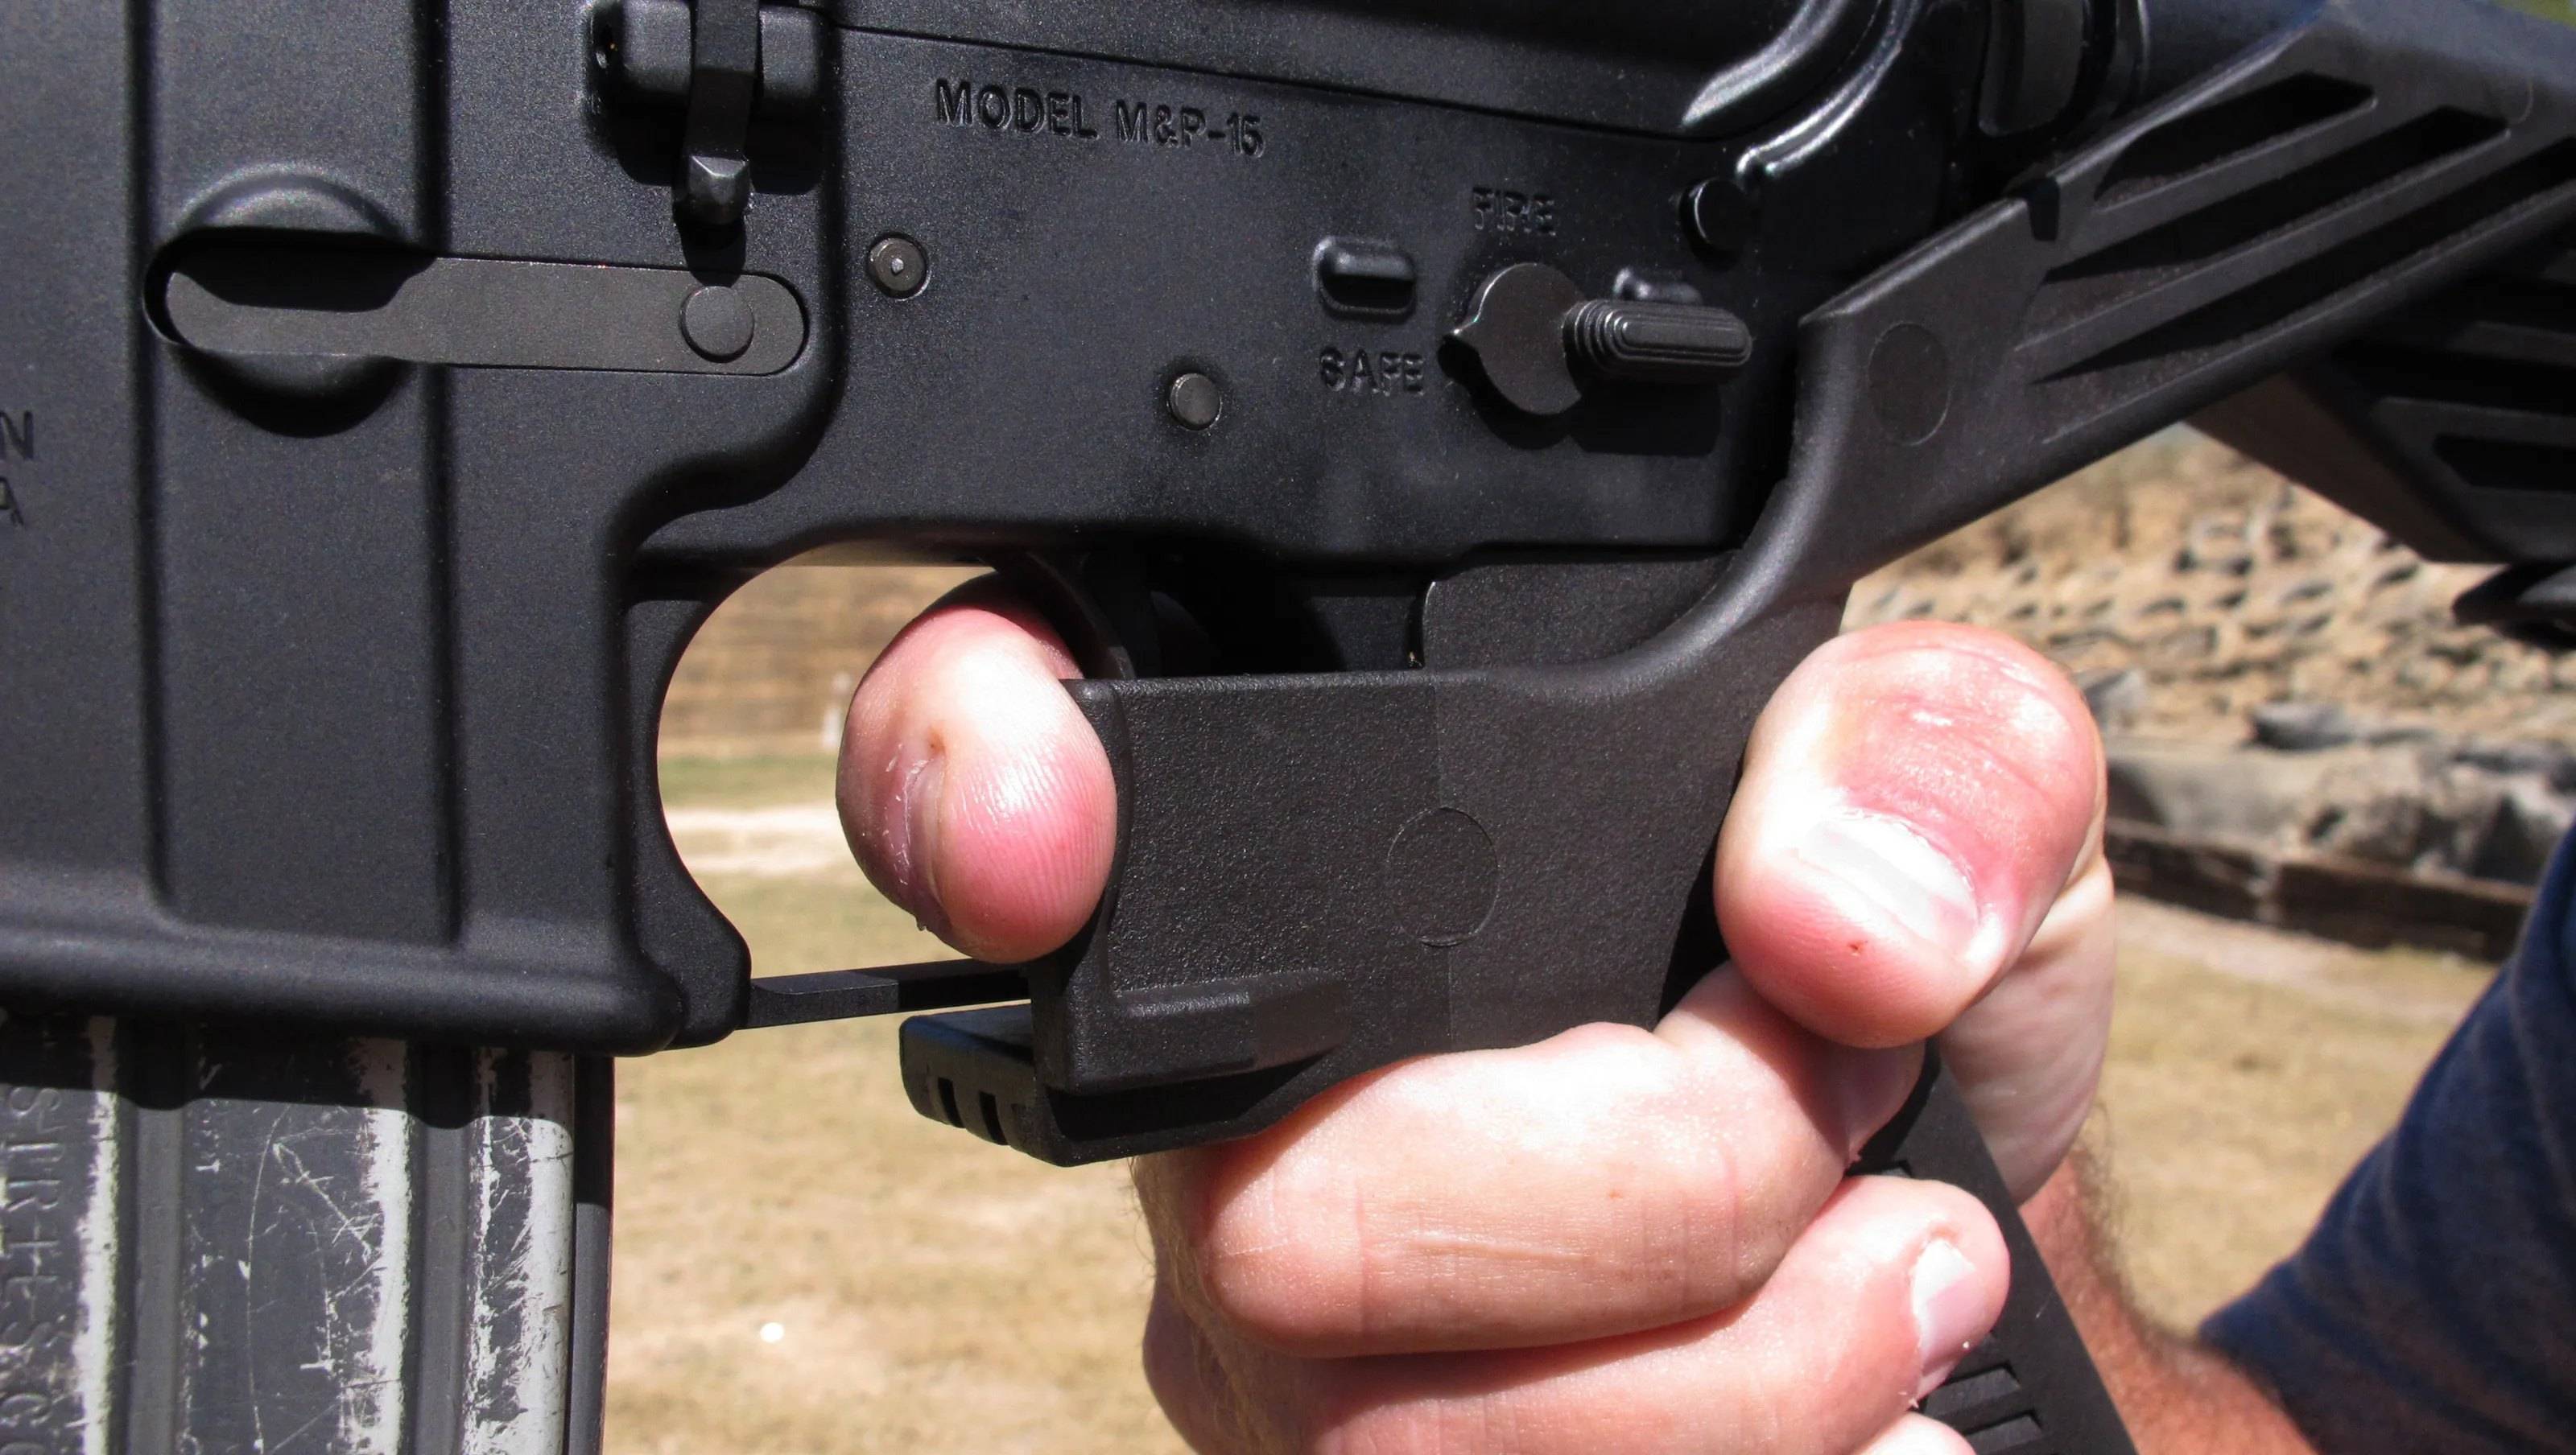 拉斯维加斯枪击案的速射神器:将半自动步枪改成全自动的撞火枪托